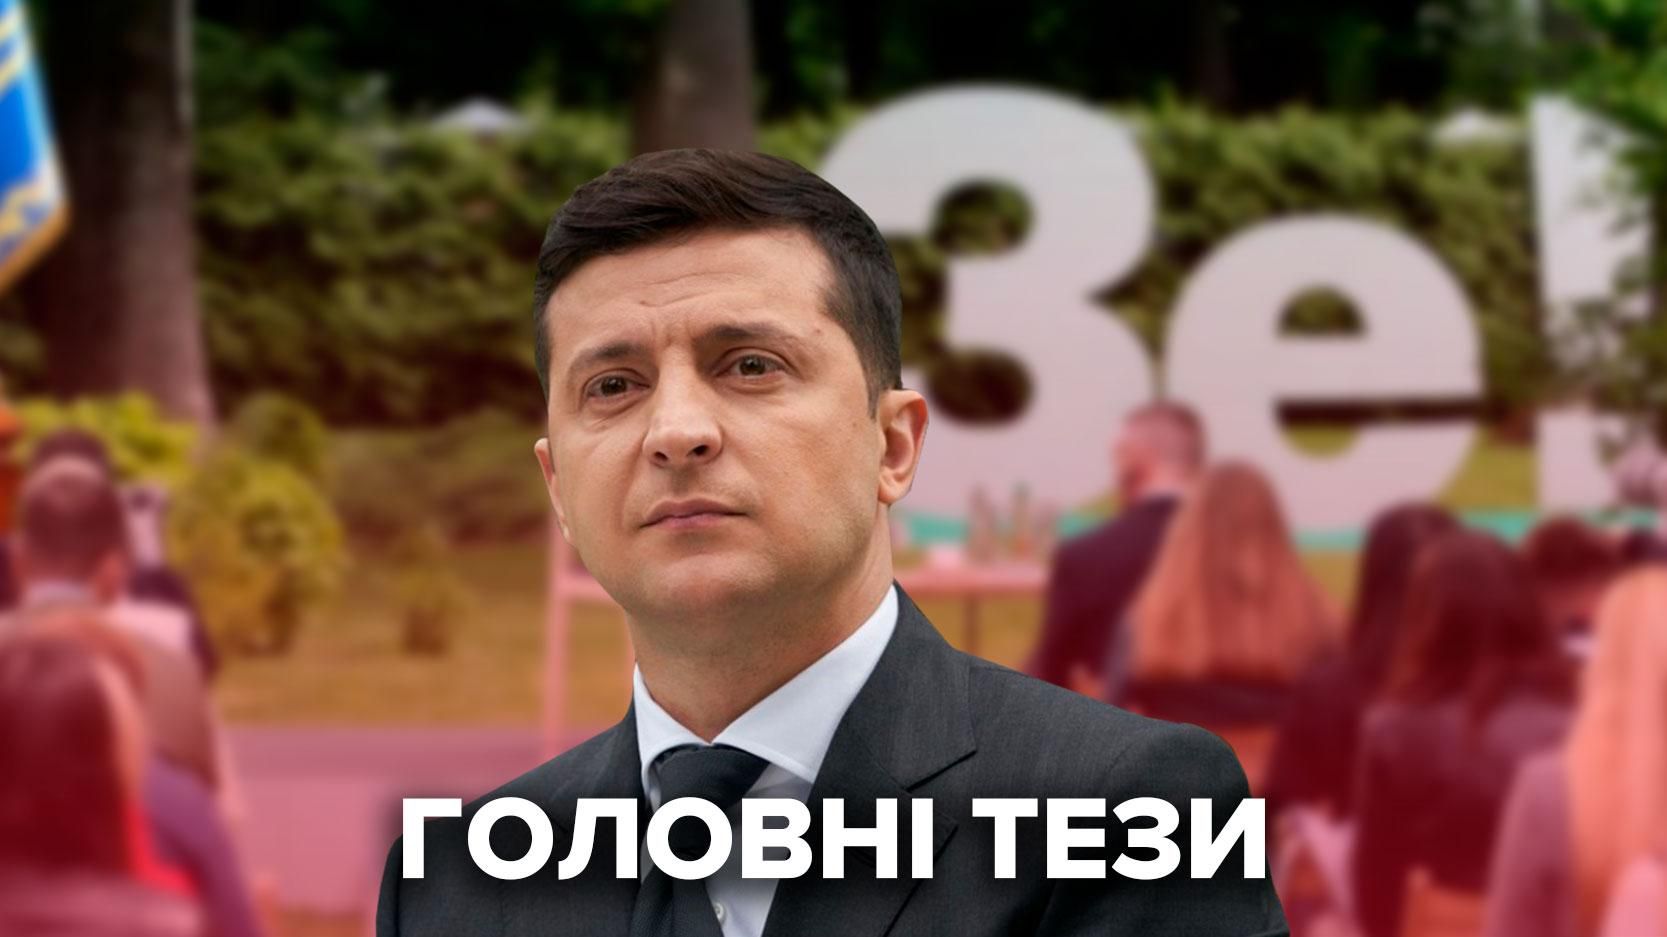 Пресконференція Зеленського 20 травня 2021: про що говорив президент України